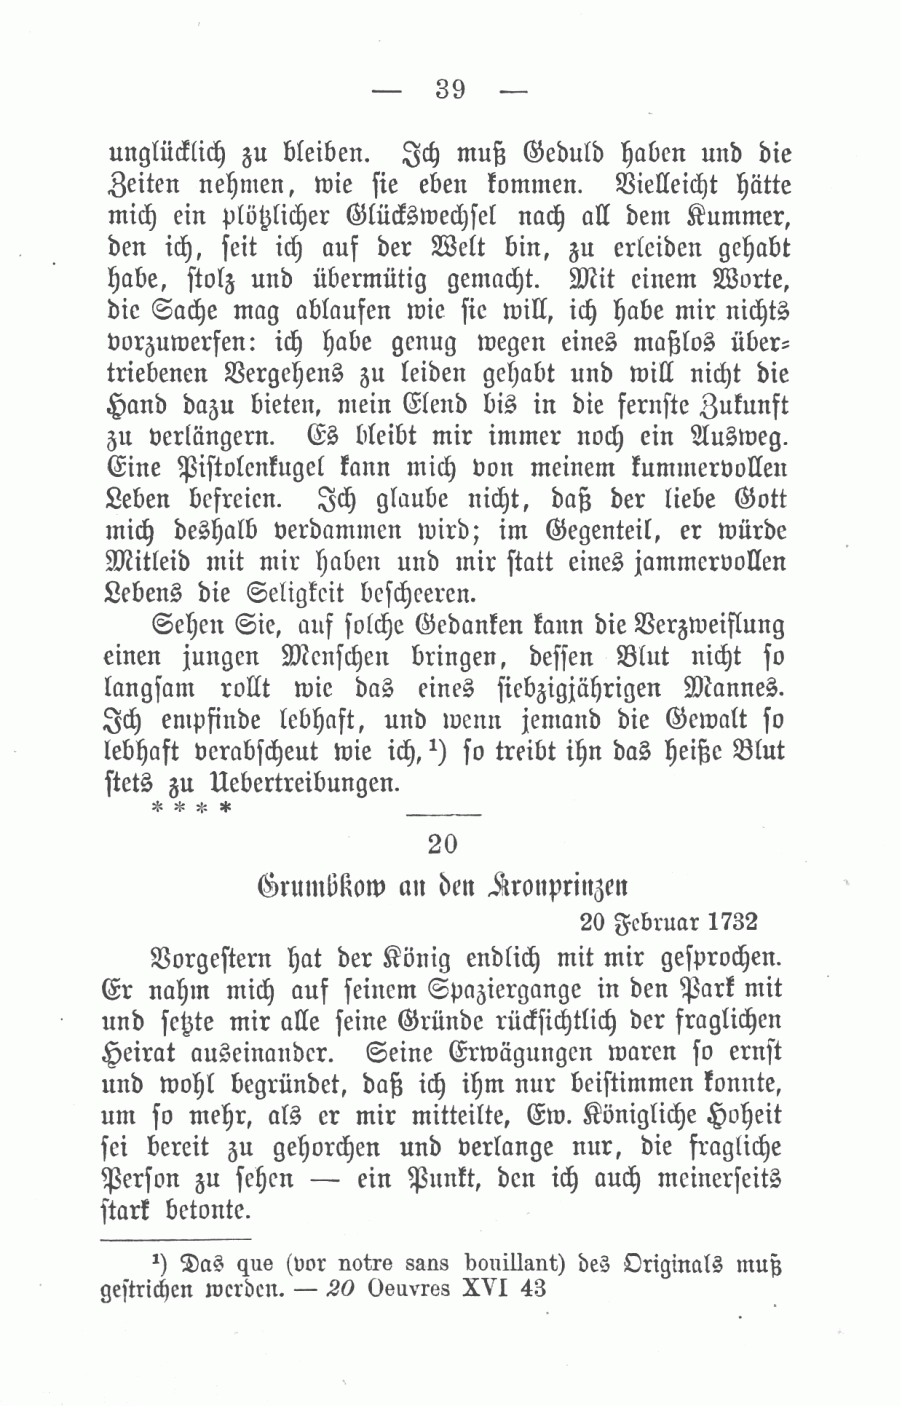 S. 39, Obj. 2